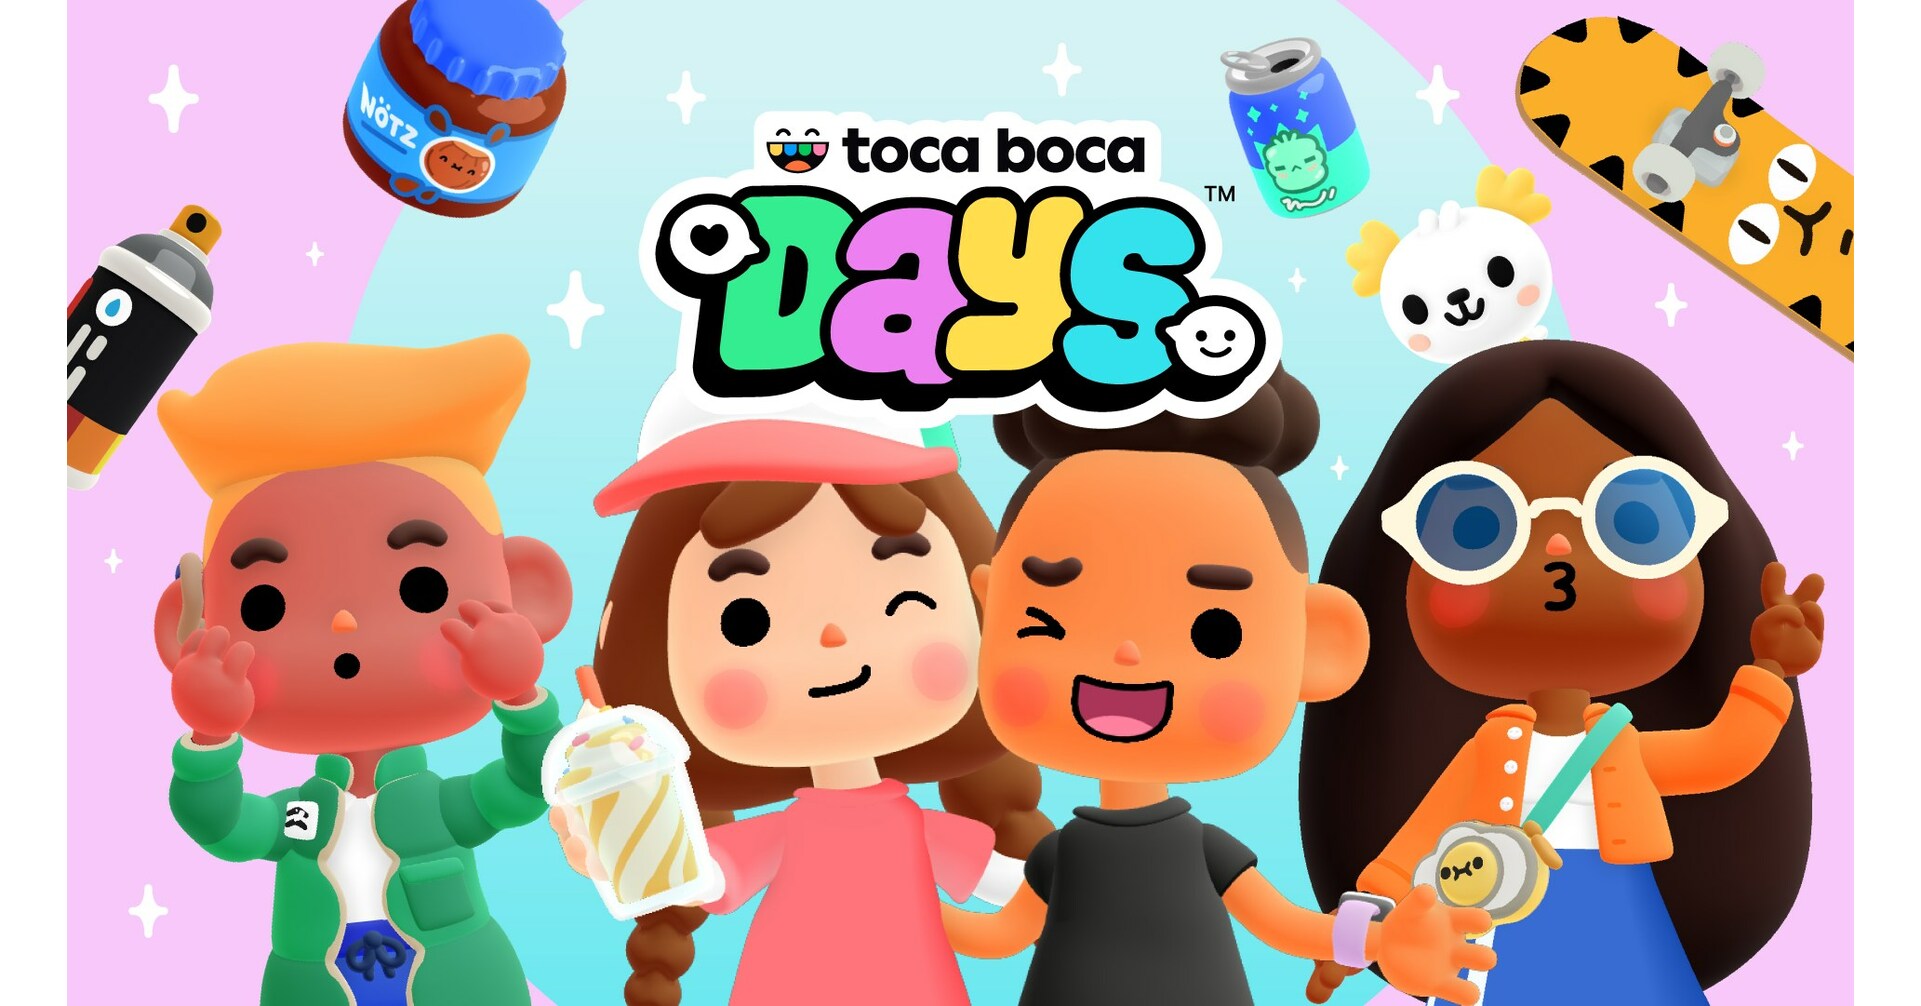 Por primera vez, Toca Boca® ingresa al mundo del multijugador con el lanzamiento de Toca Boca Days™